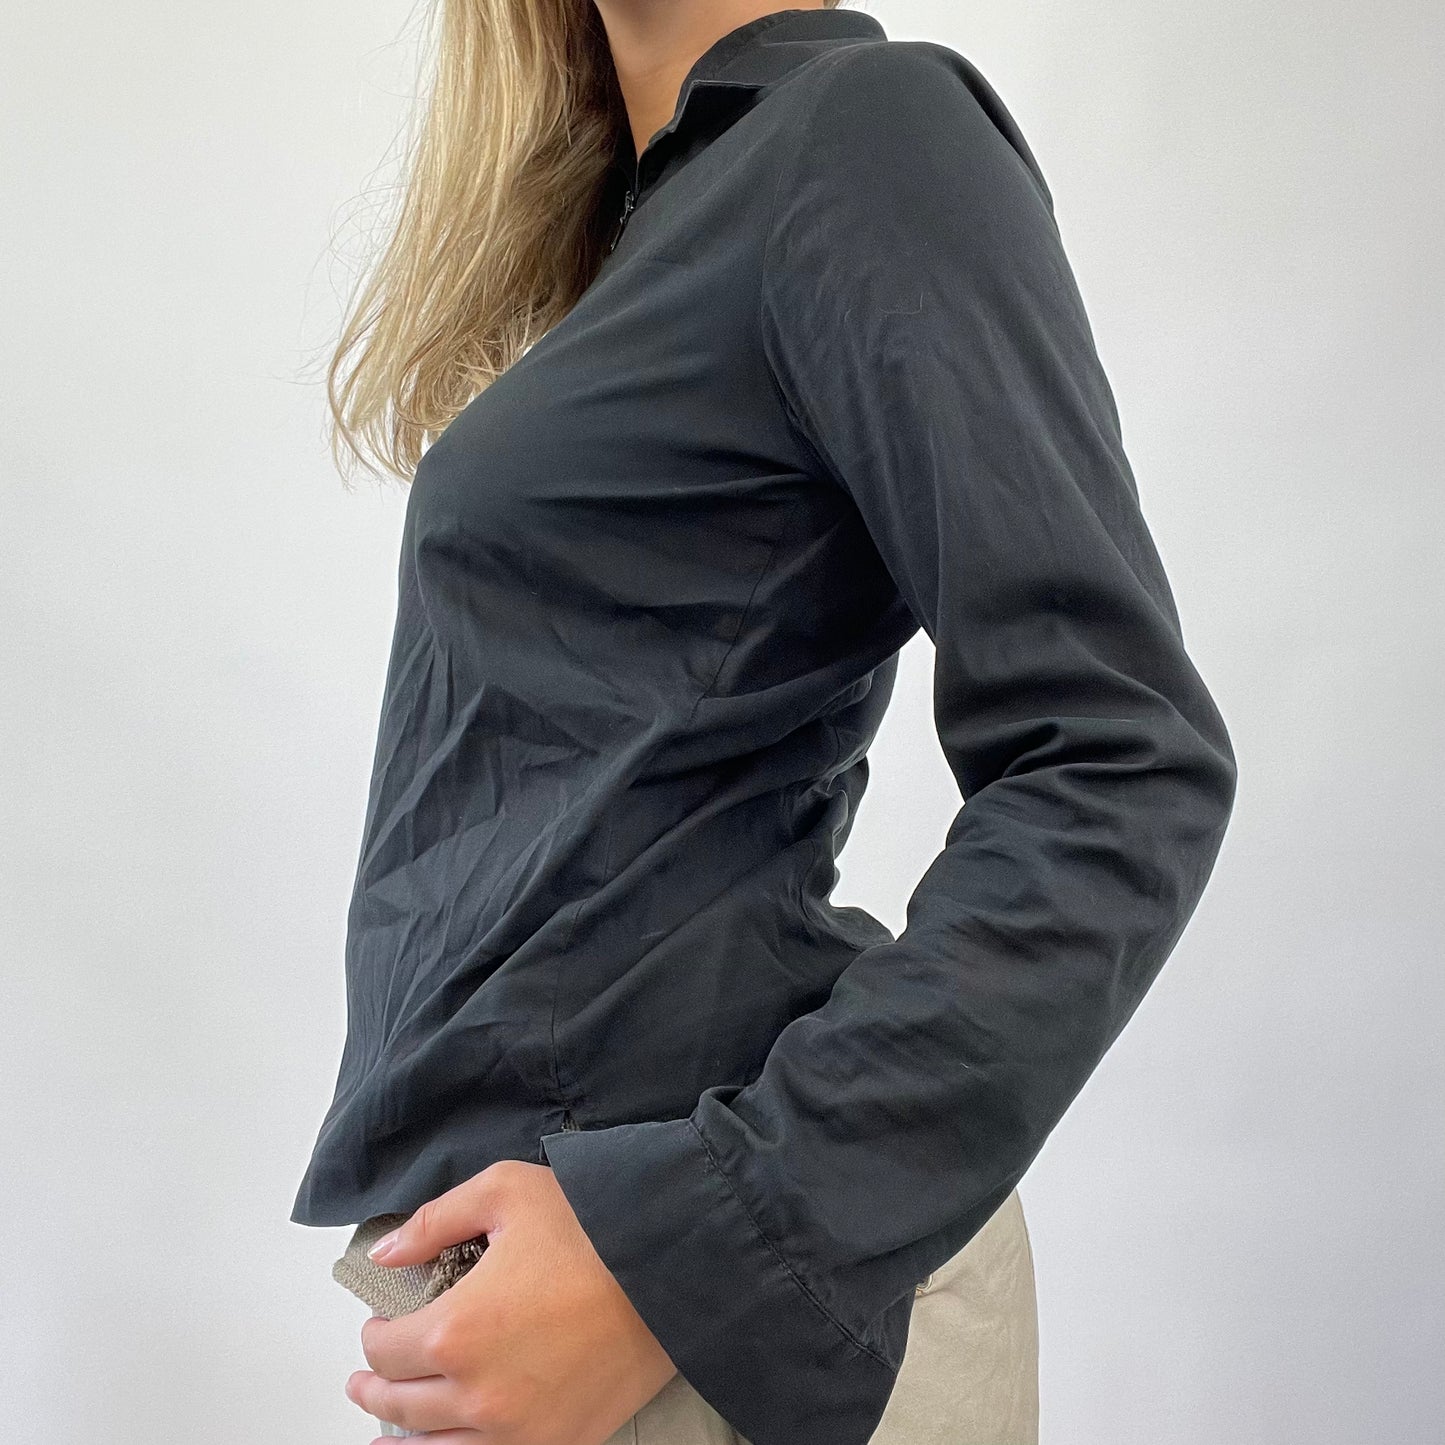 MANHATTAN GIRL DROP | small black ralph lauren zip shirt